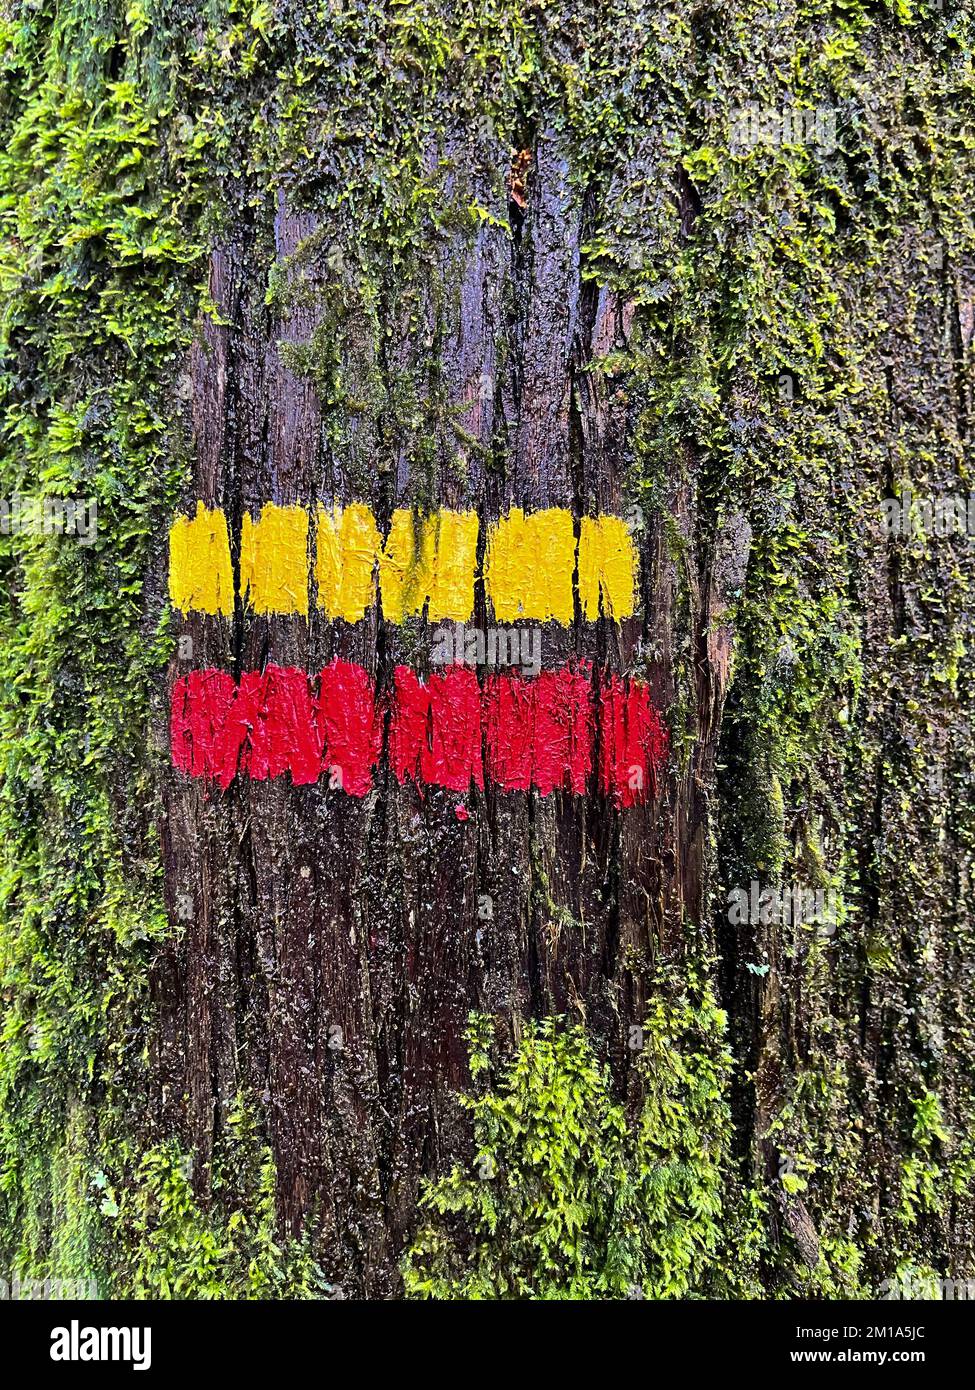 Panneau de sentier de randonnée (couleurs rouge et jaune) peint sur un tronc d'arbre indiquant le chemin ou la direction correcte pour aller le long d'un sentier Banque D'Images